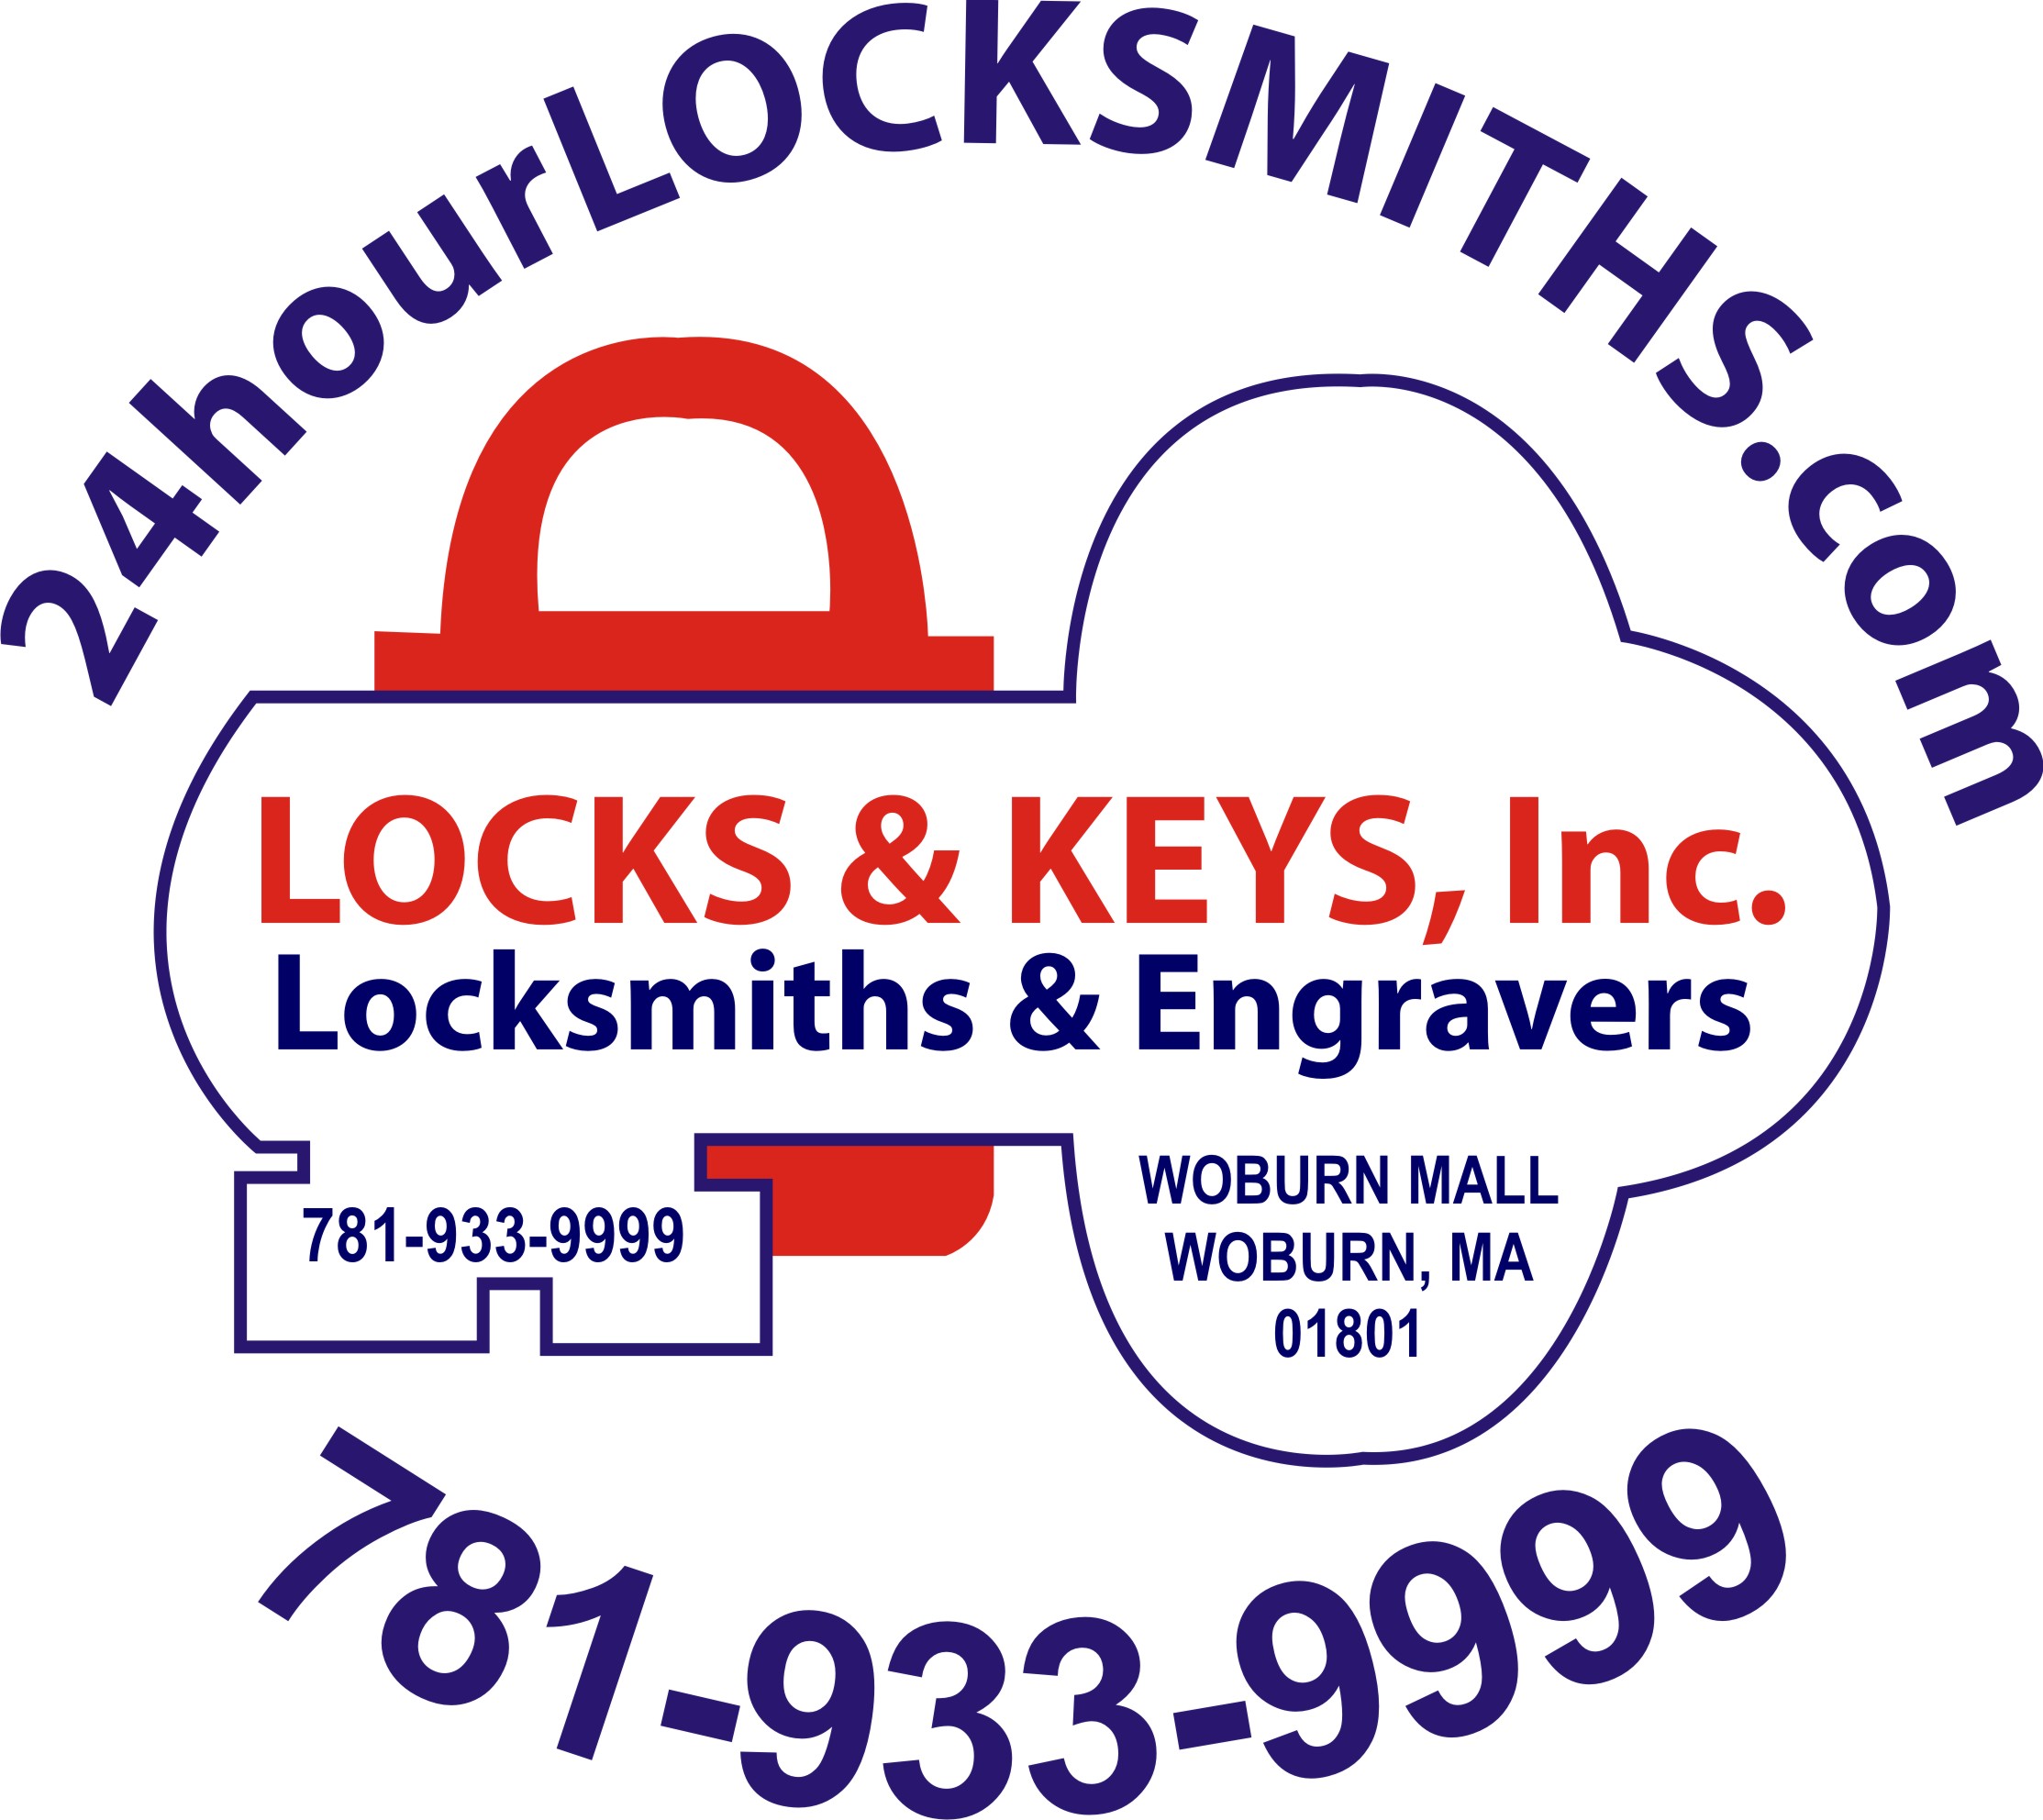 Woburn MA locksmith